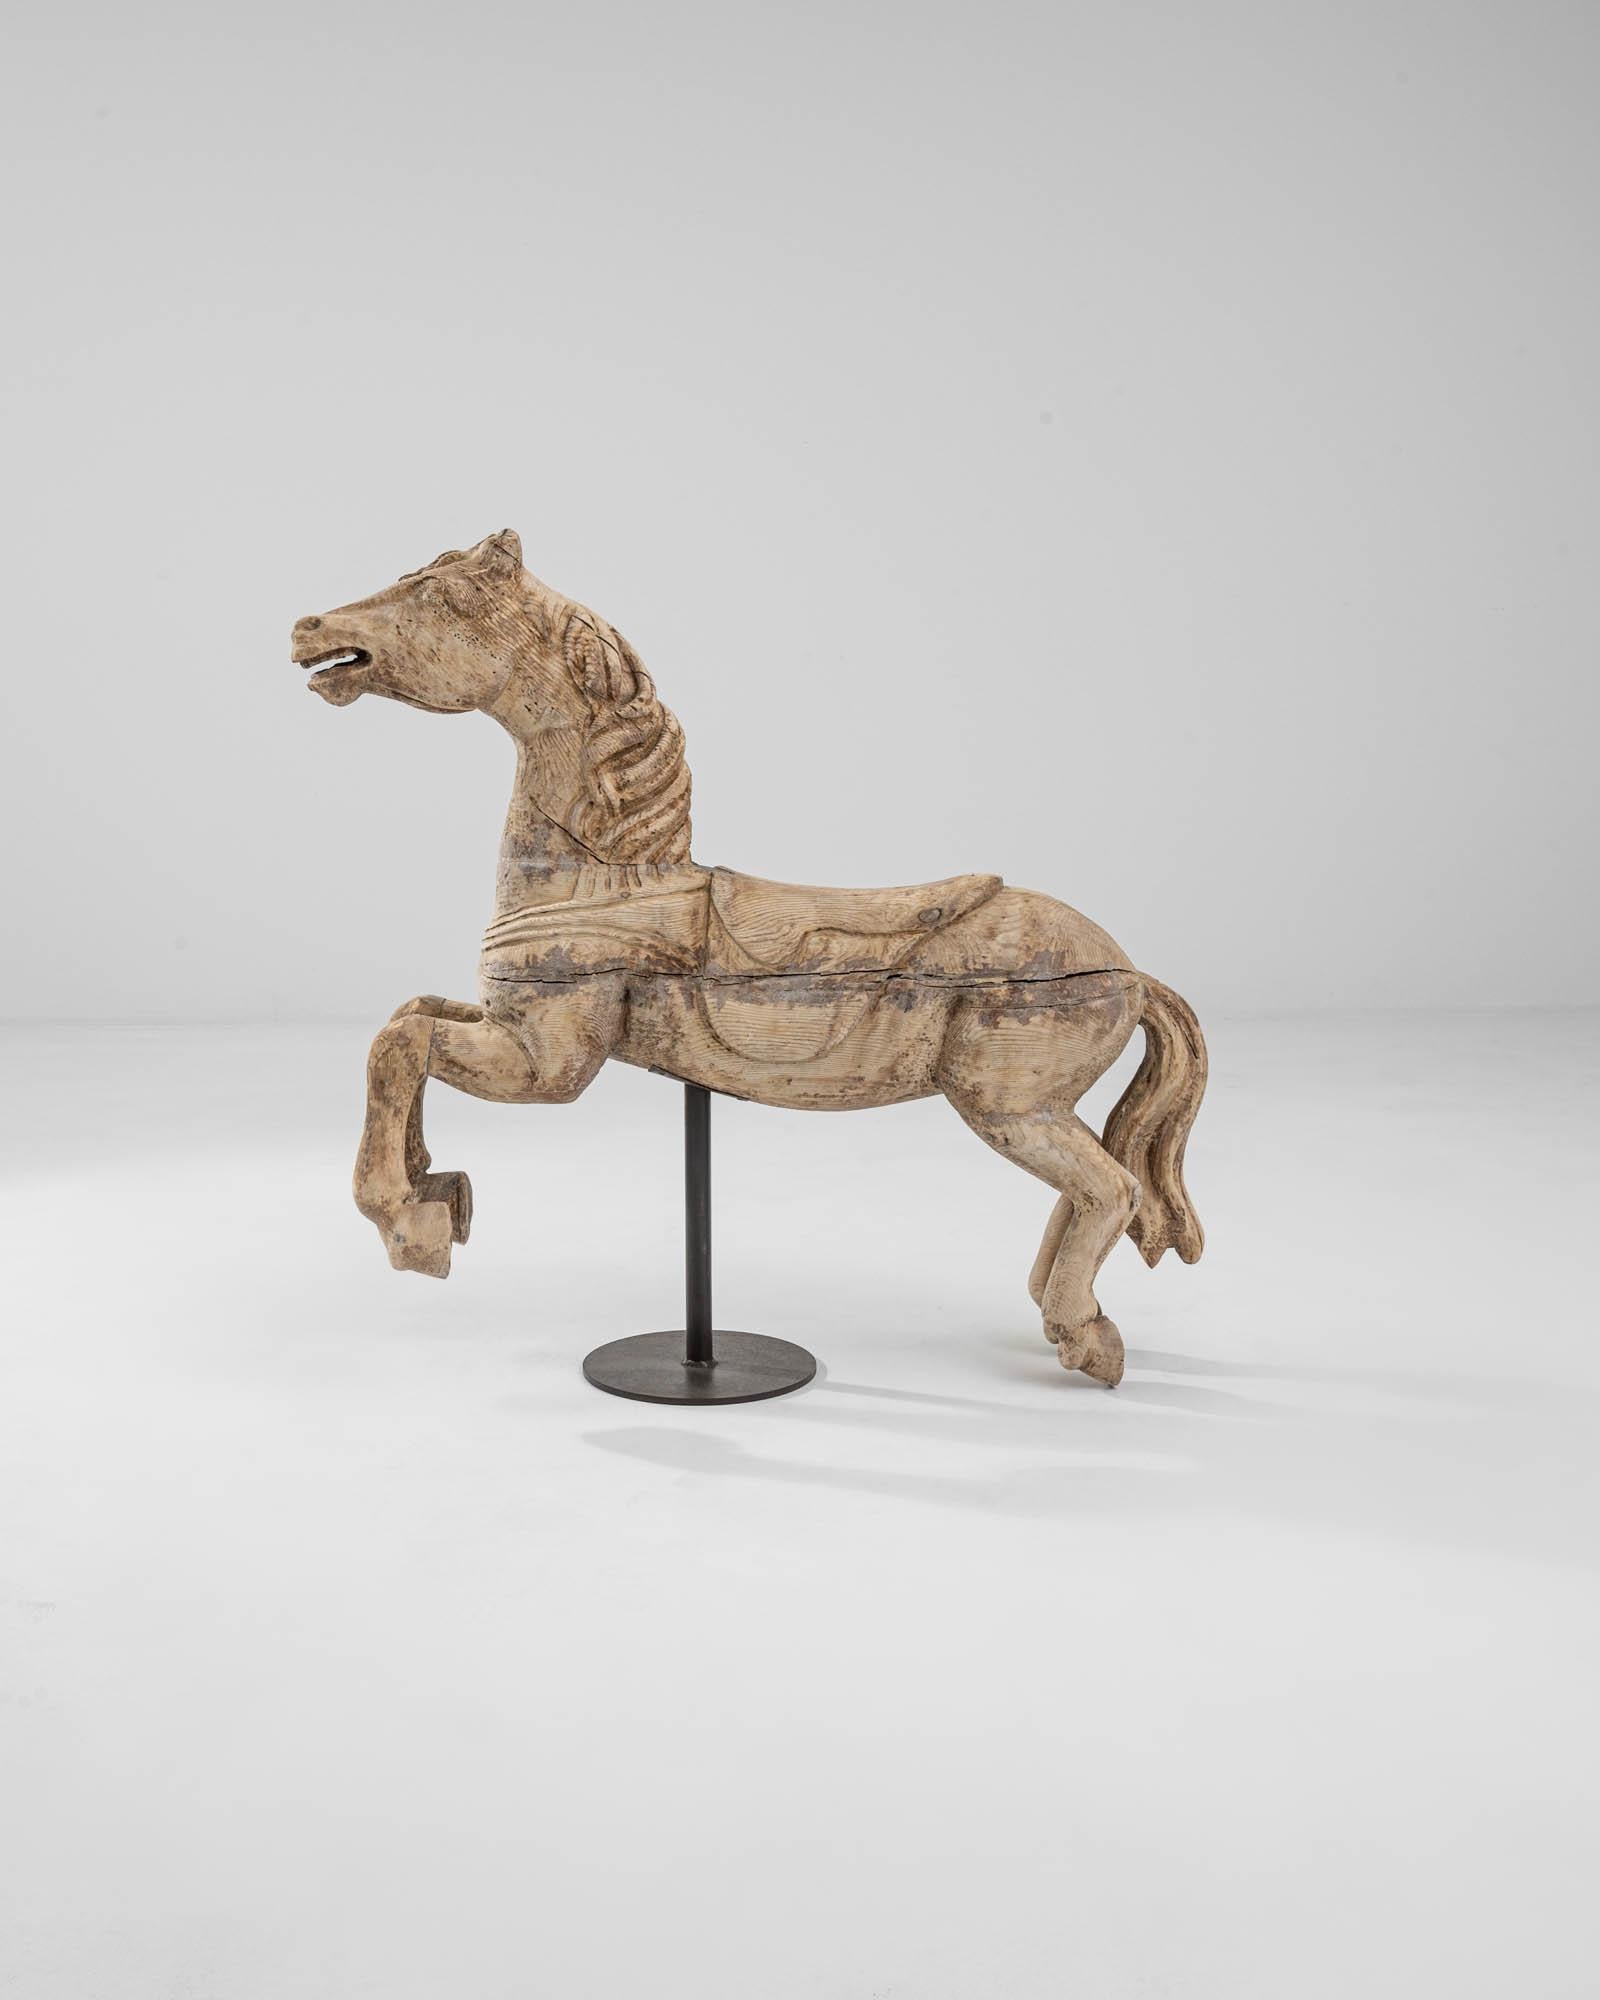 Sculpture en bois représentant un cheval, datant de la France du XIXe siècle. Capturé à mi-galop, ce cheval bondissant vibre d'une énergie charismatique. Le grain du bois court comme des stries de cheveux le long de son corps, créant la sensation du